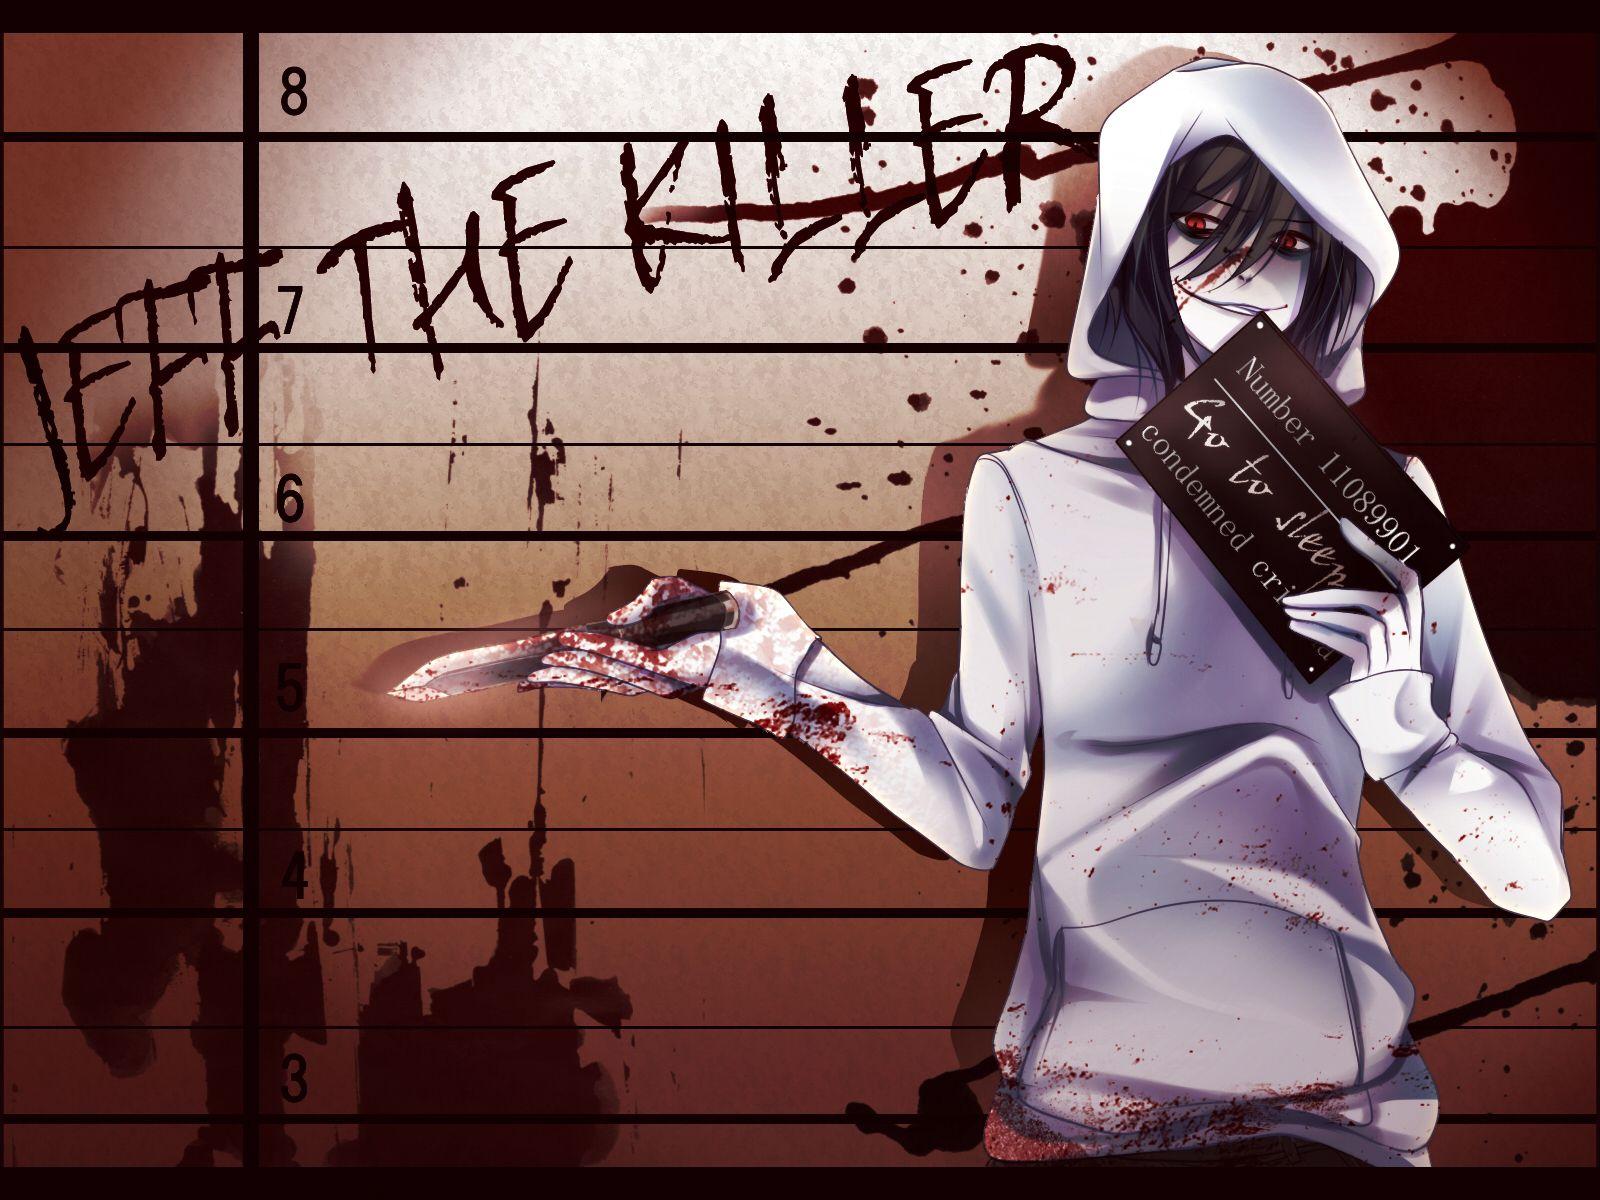 Jeff the Killer Anime Image Board